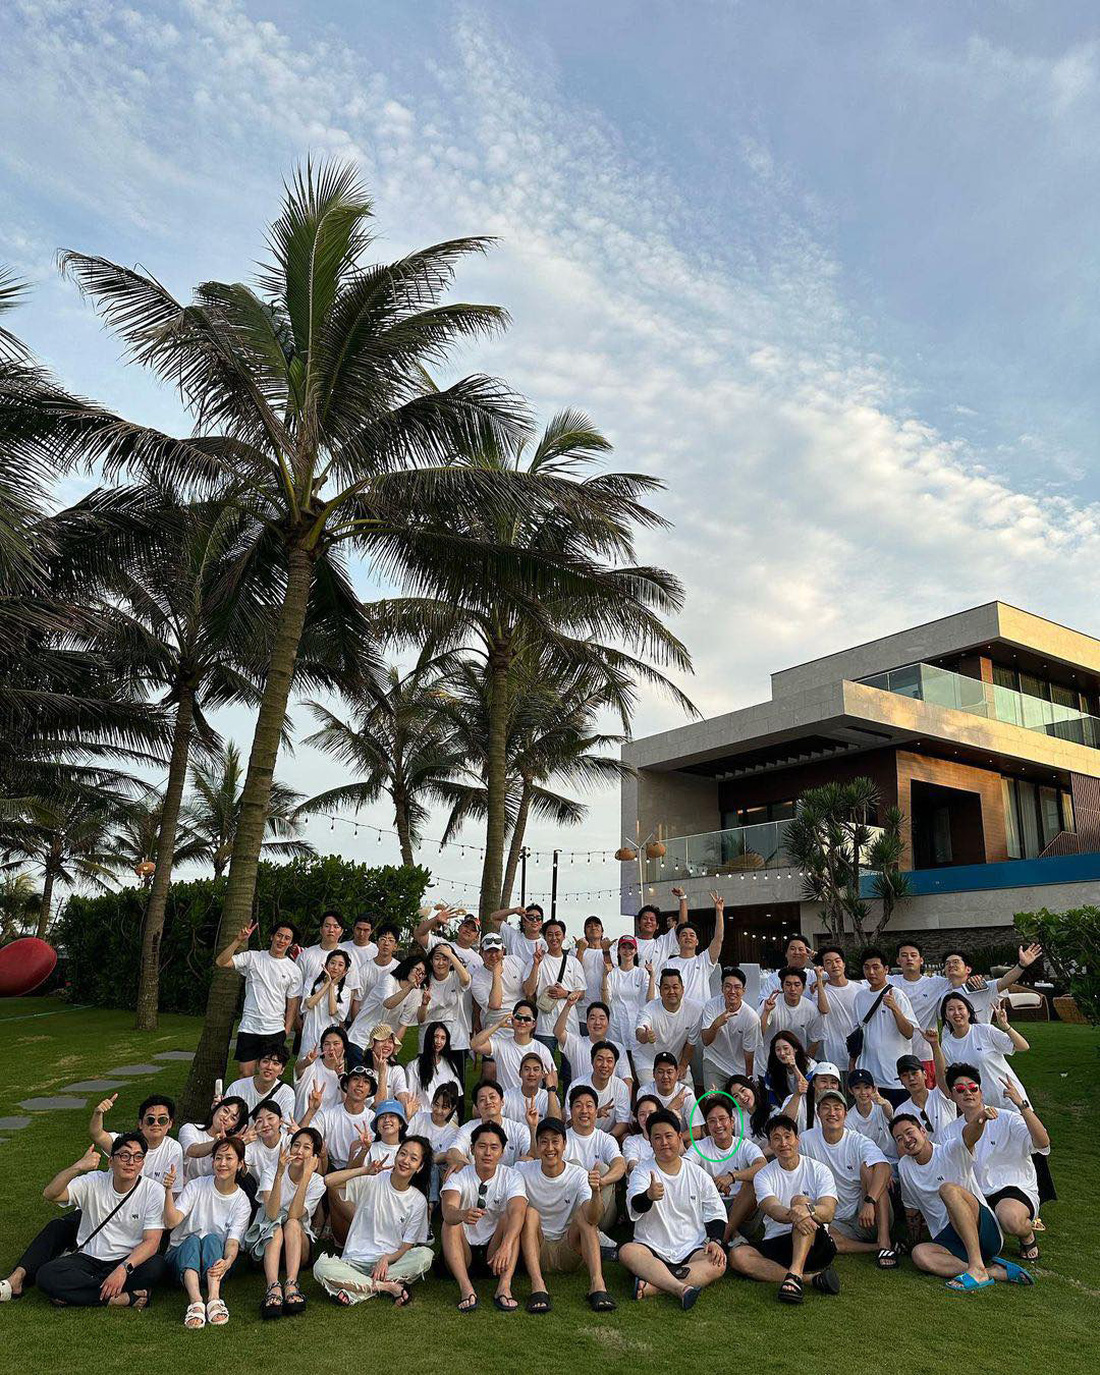 Ngôi sao Lee Byung Hun đưa 62 nghệ sĩ cùng công ty đi nghỉ dưỡng ở Đà Nẵng - Ảnh: Instagram nhân vật